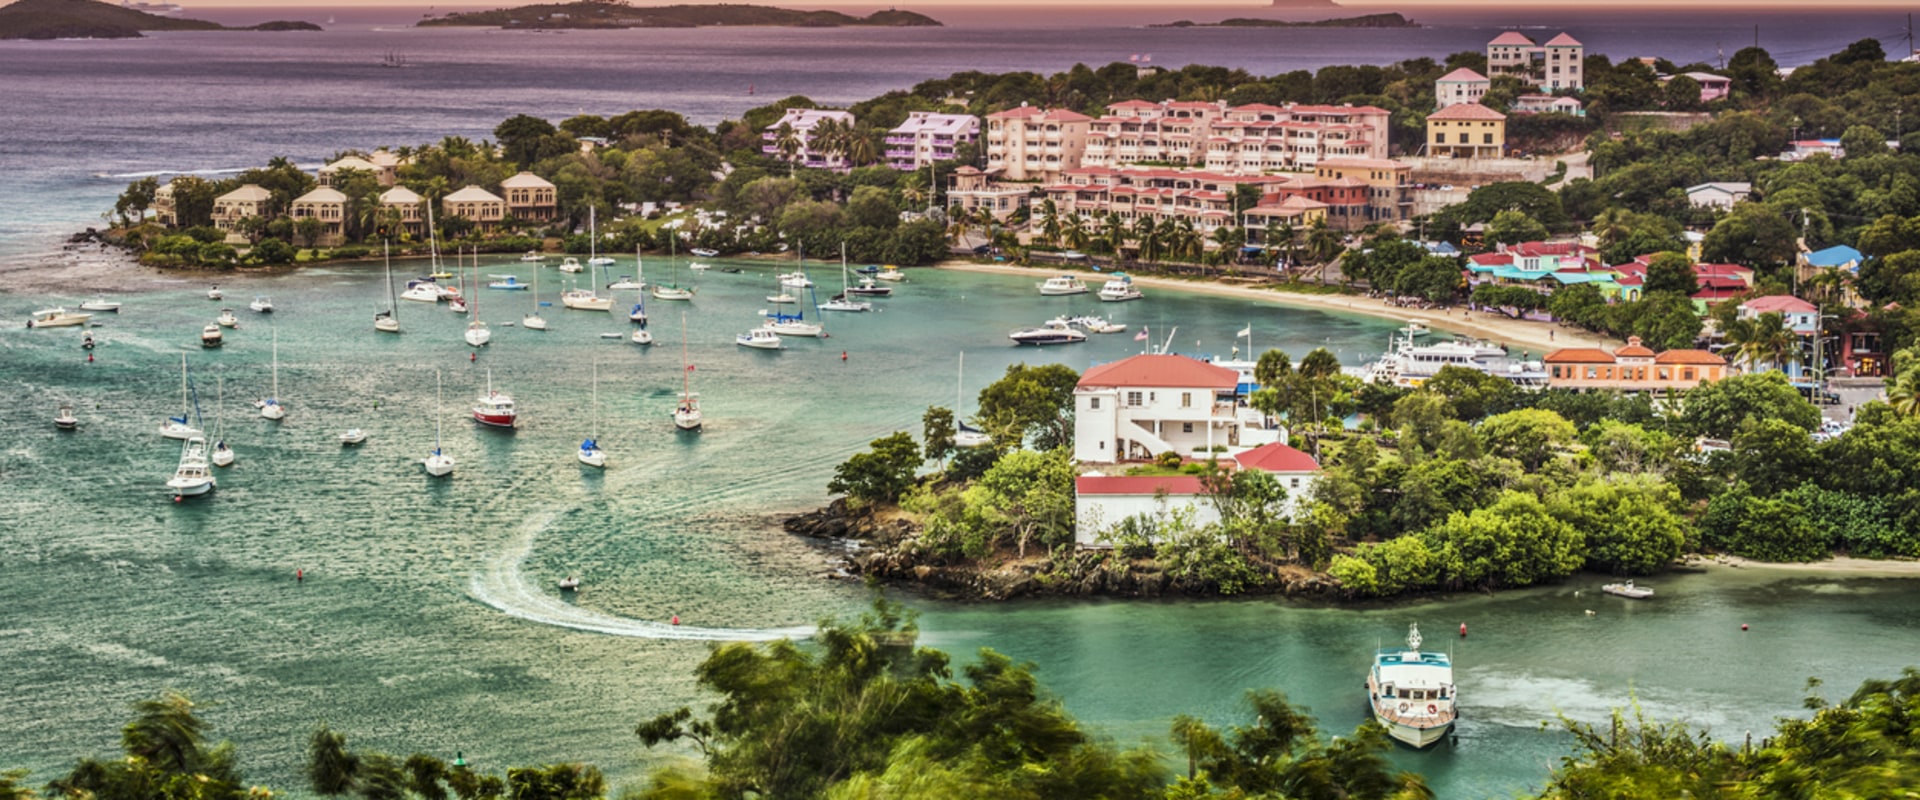 The Easiest US Virgin Island to Visit